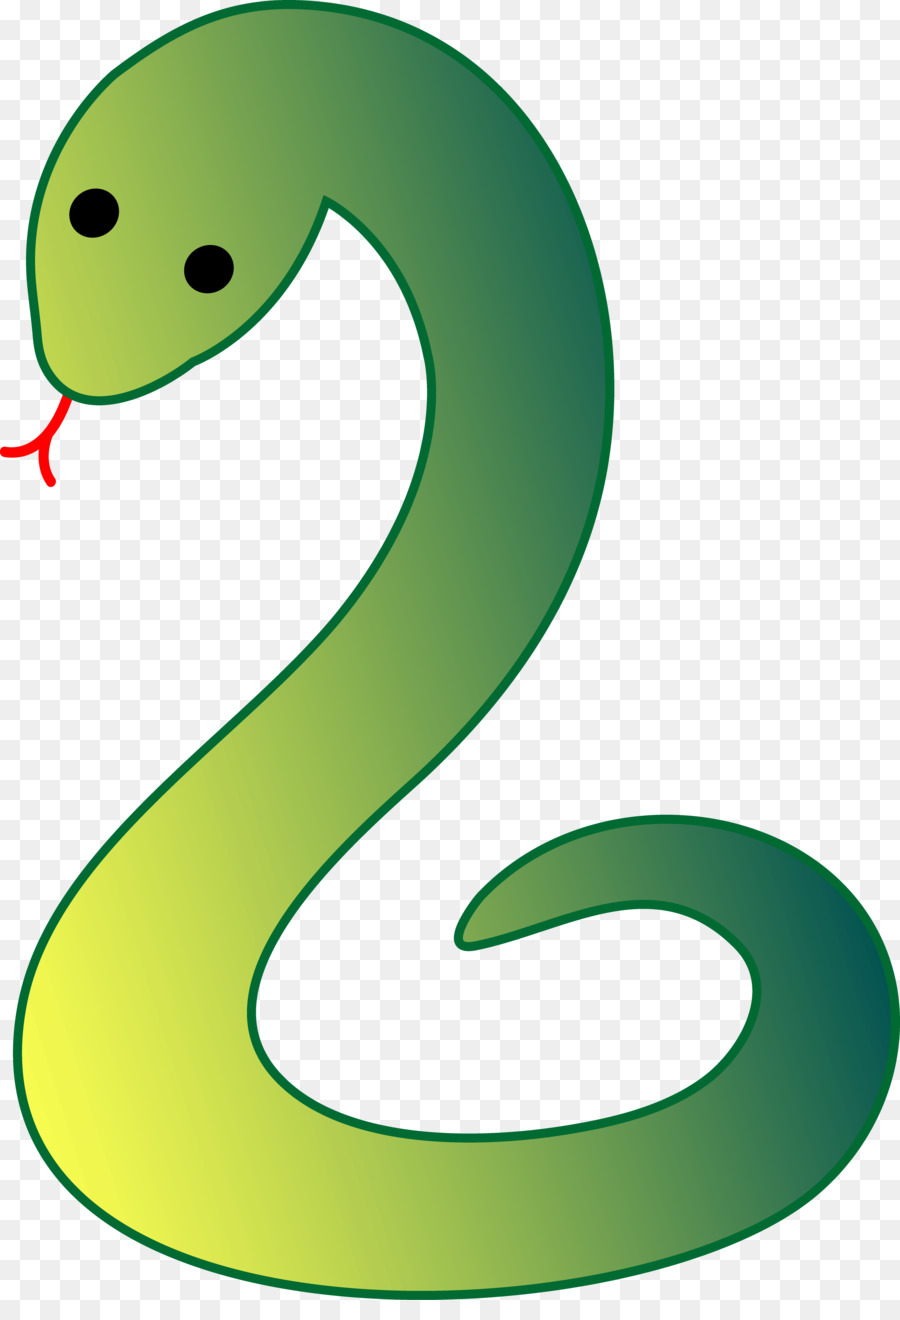 Snake Clip art - anaconda png download - 3338*4822 - Free Transparent Snake png Download.